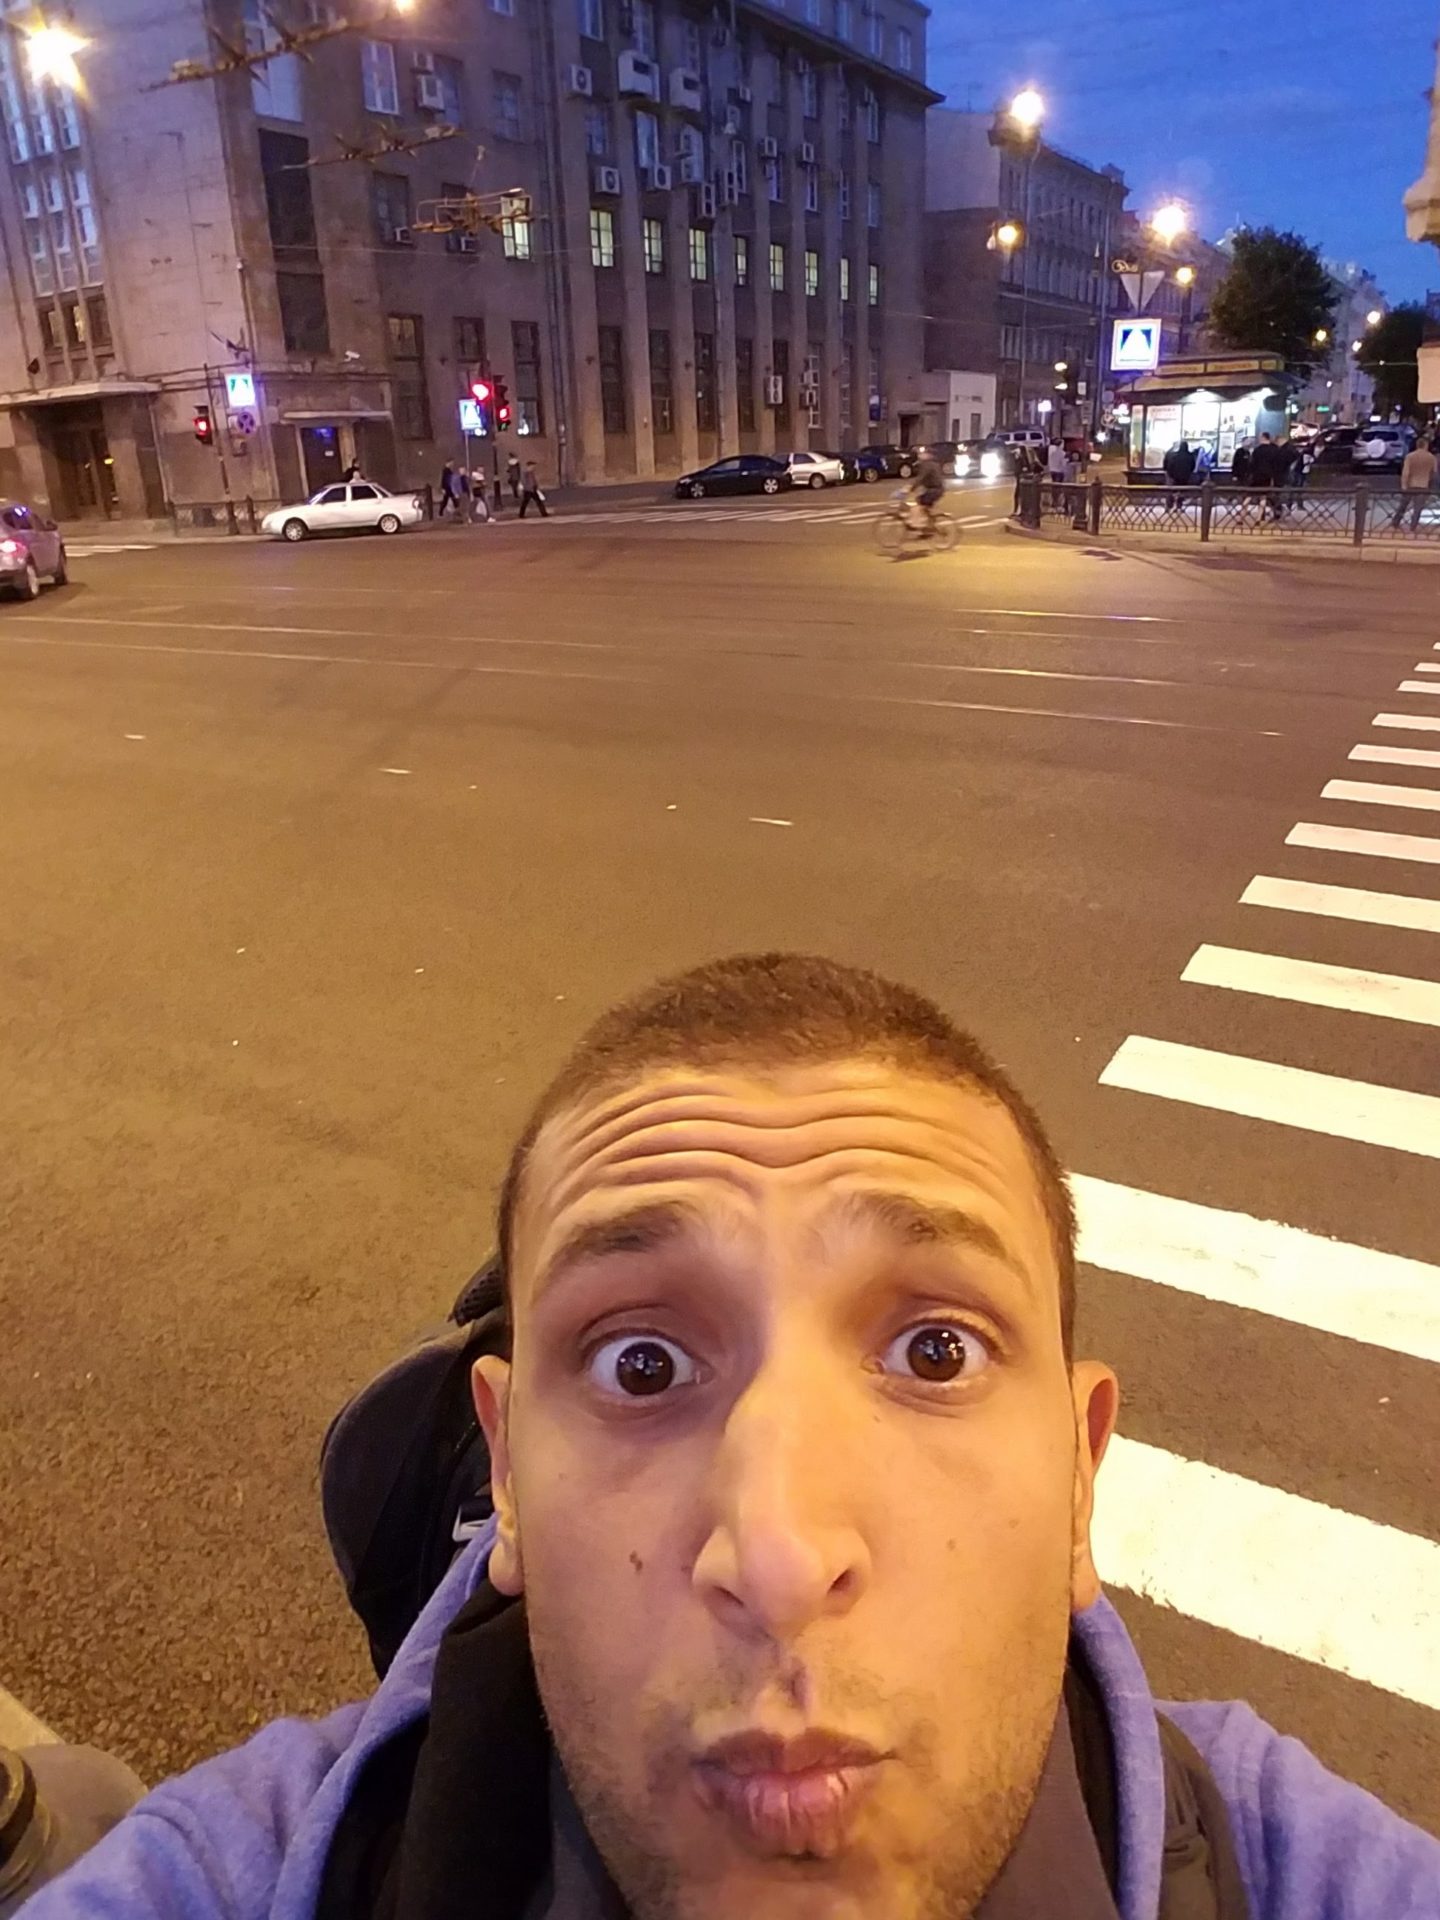 a man taking a selfie in a city